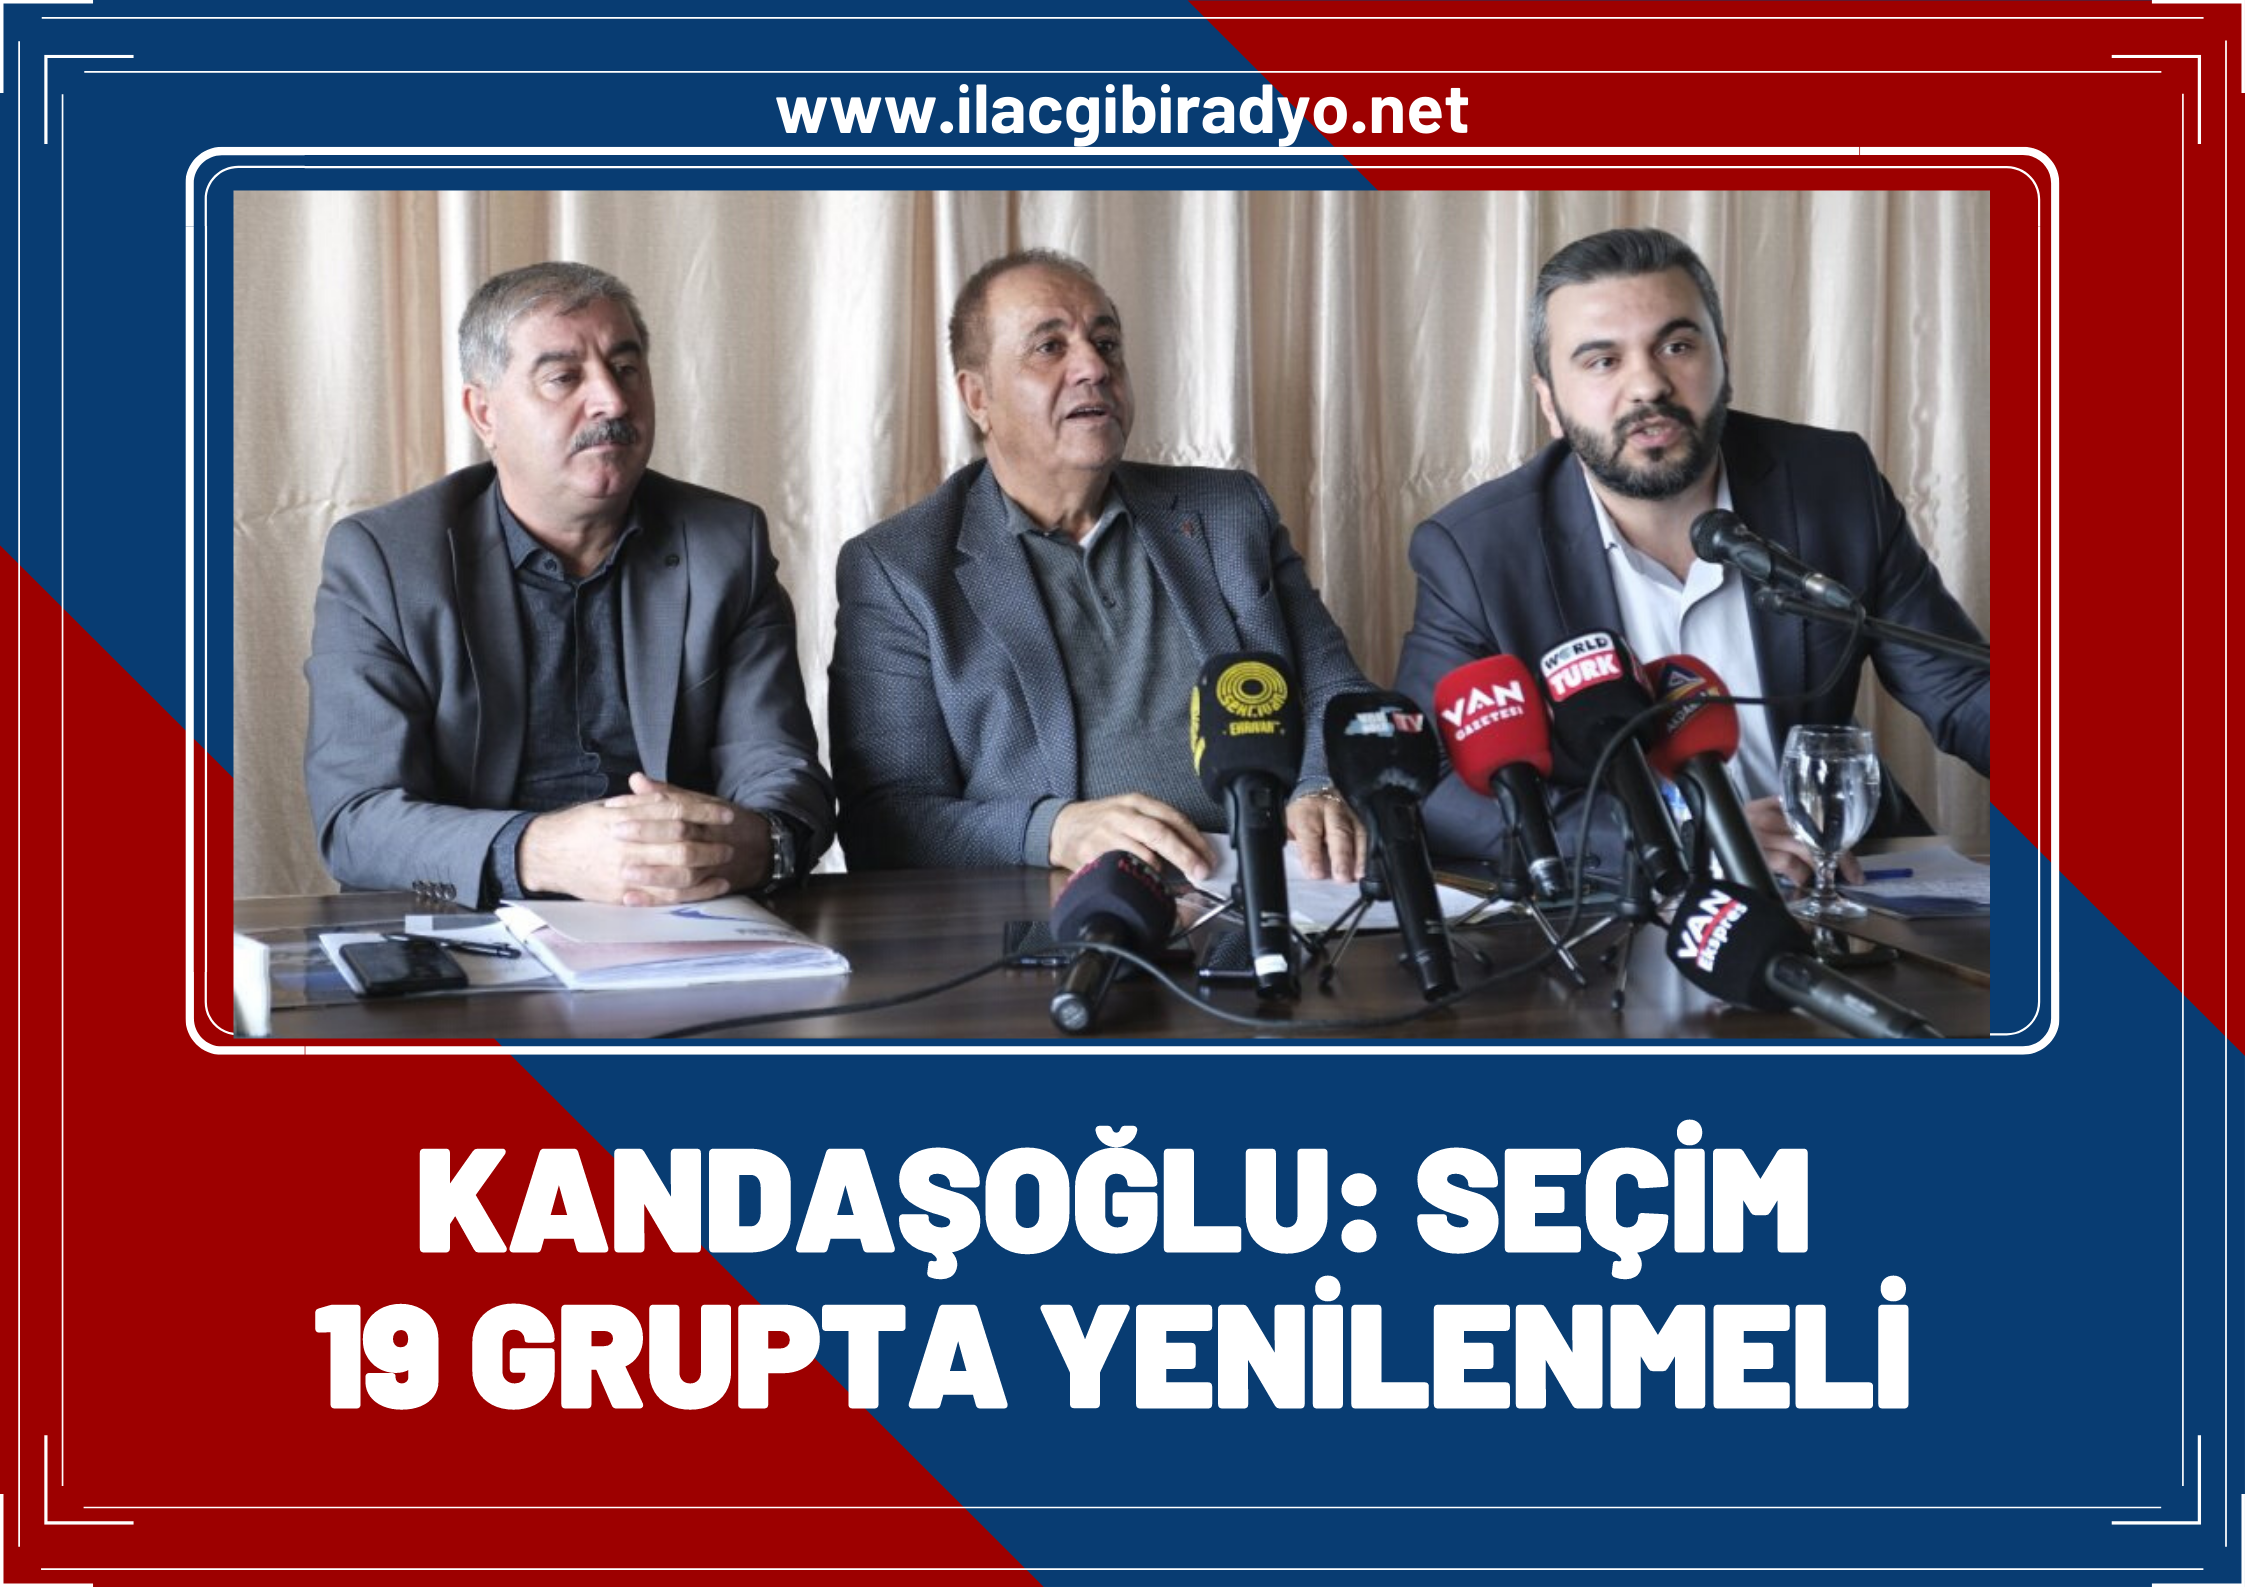 Kandaşoğlu bir kez daha çağrı yaptı: Seçim 19 grupta yenilenmeli!